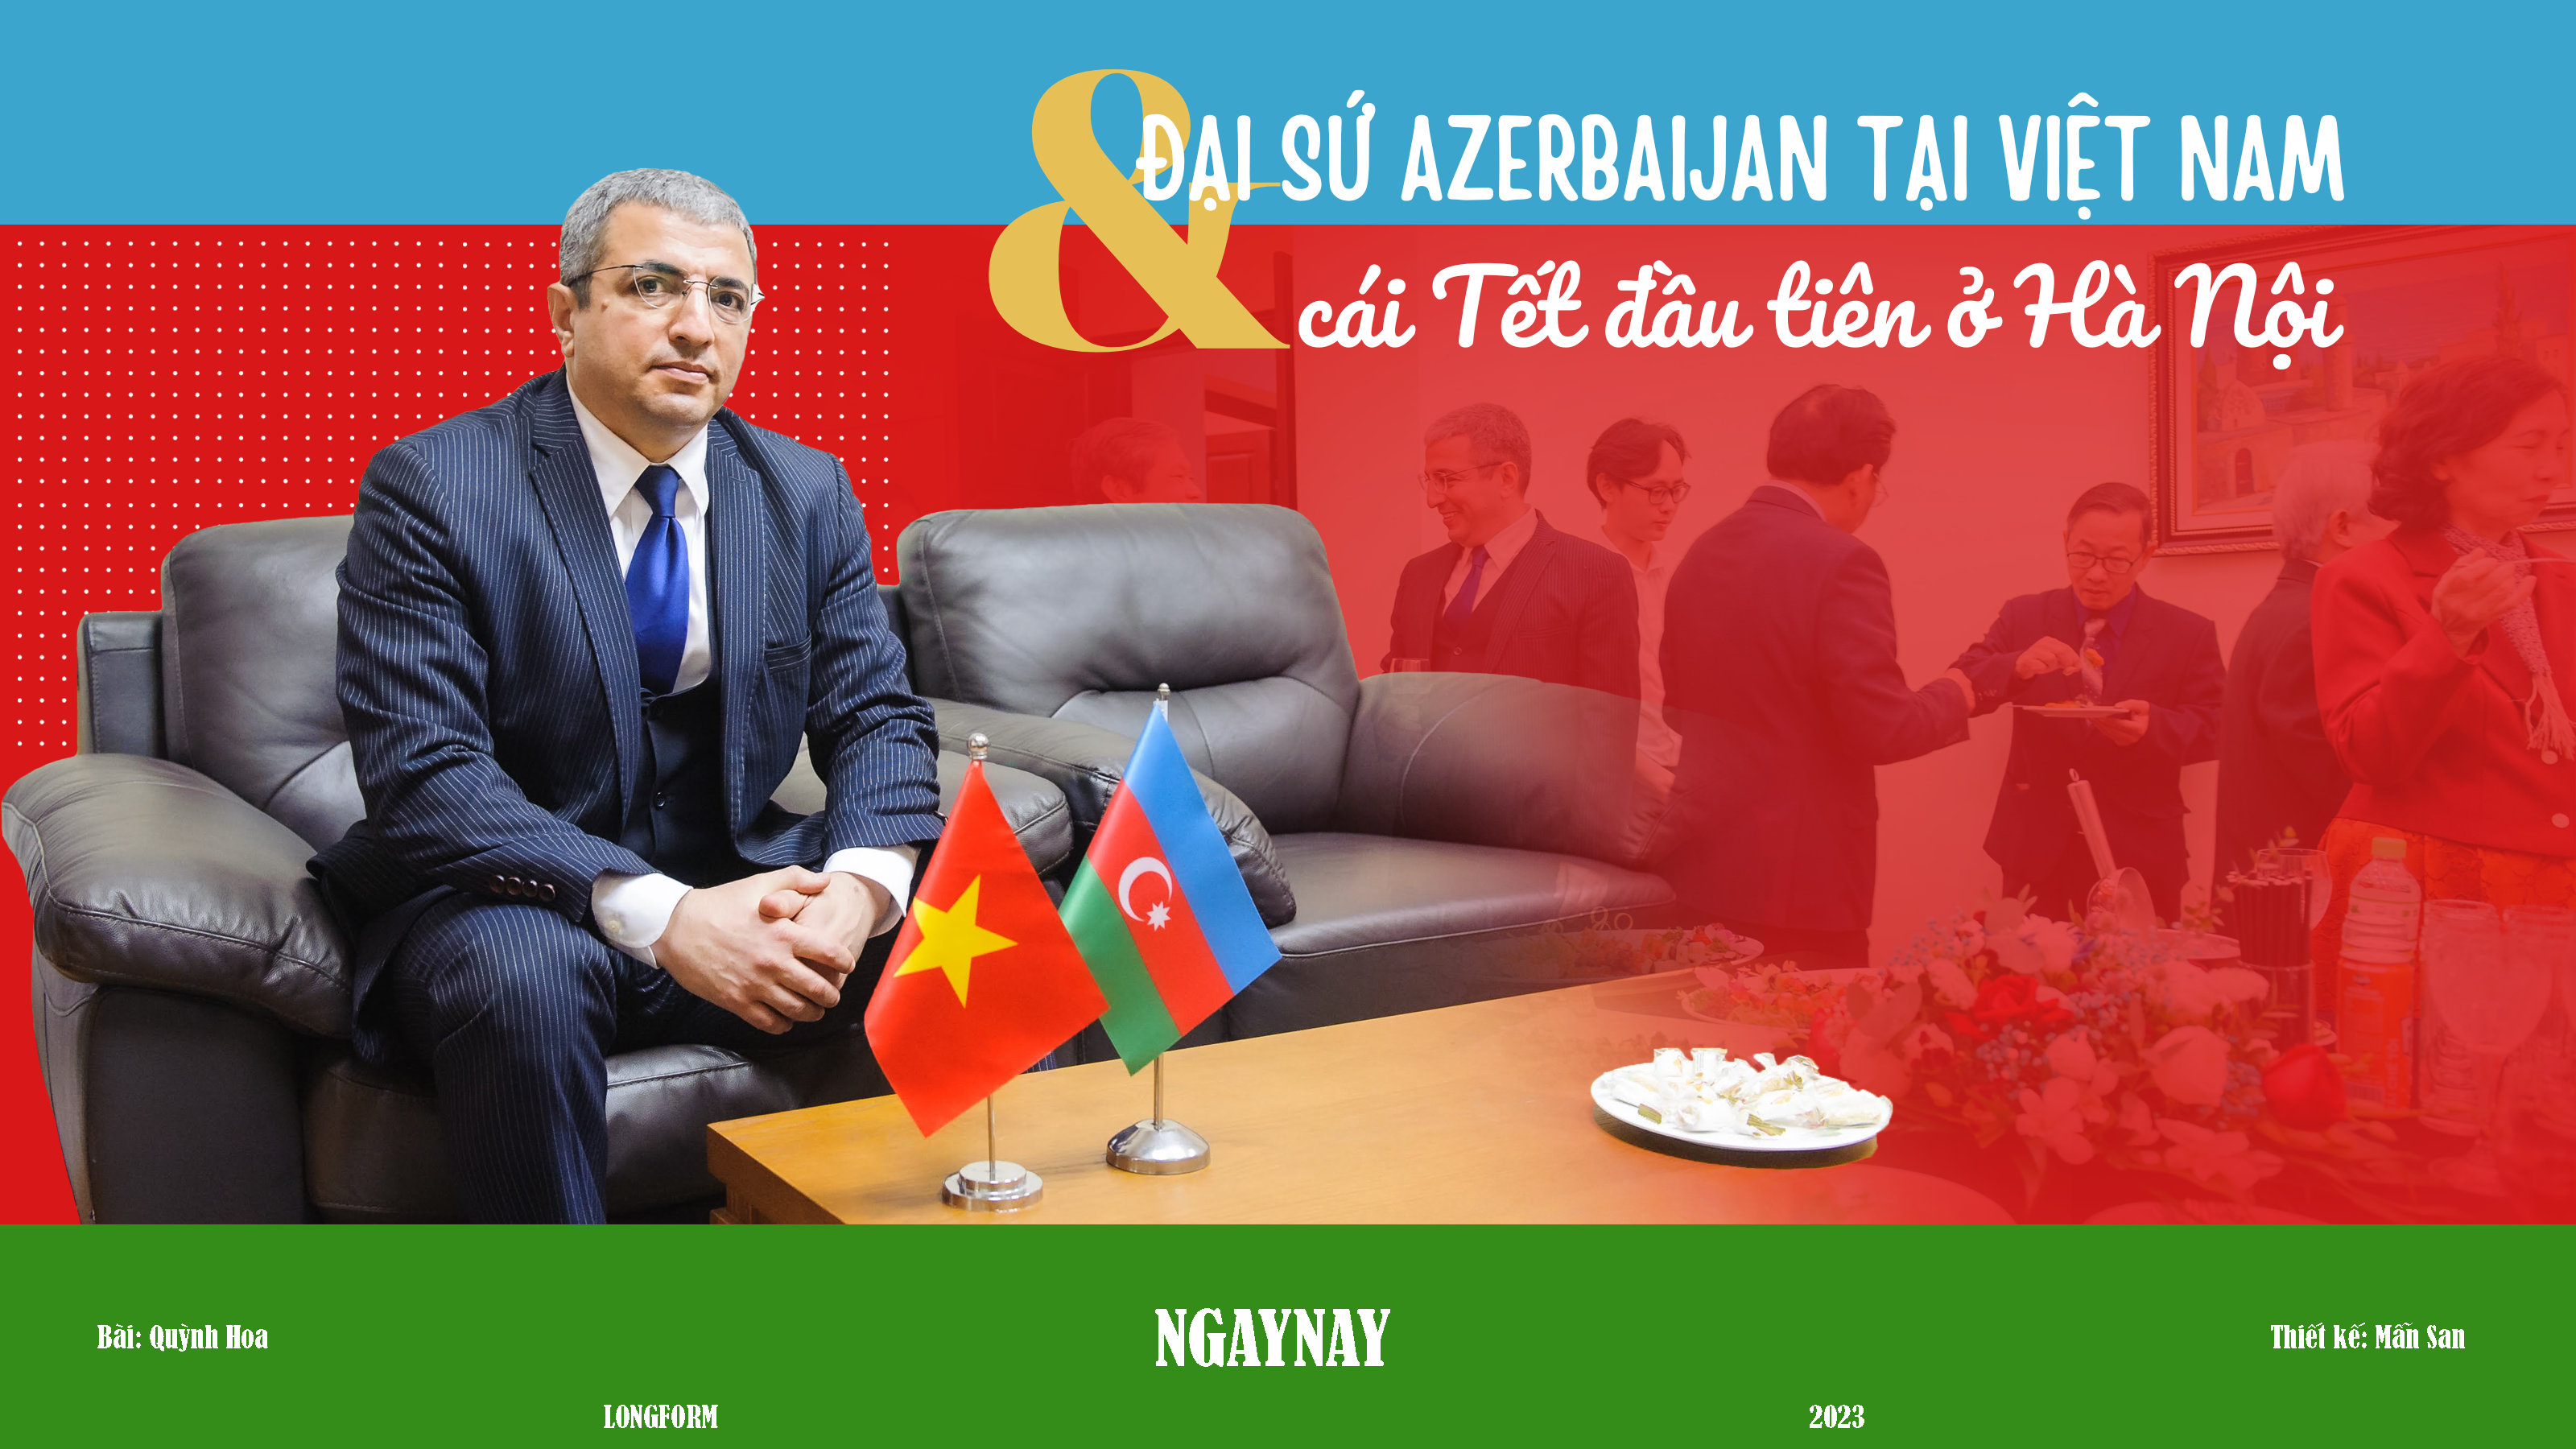 Đại sứ Azerbaijan tại Việt Nam và cái Tết đầu tiên ở Hà Nội